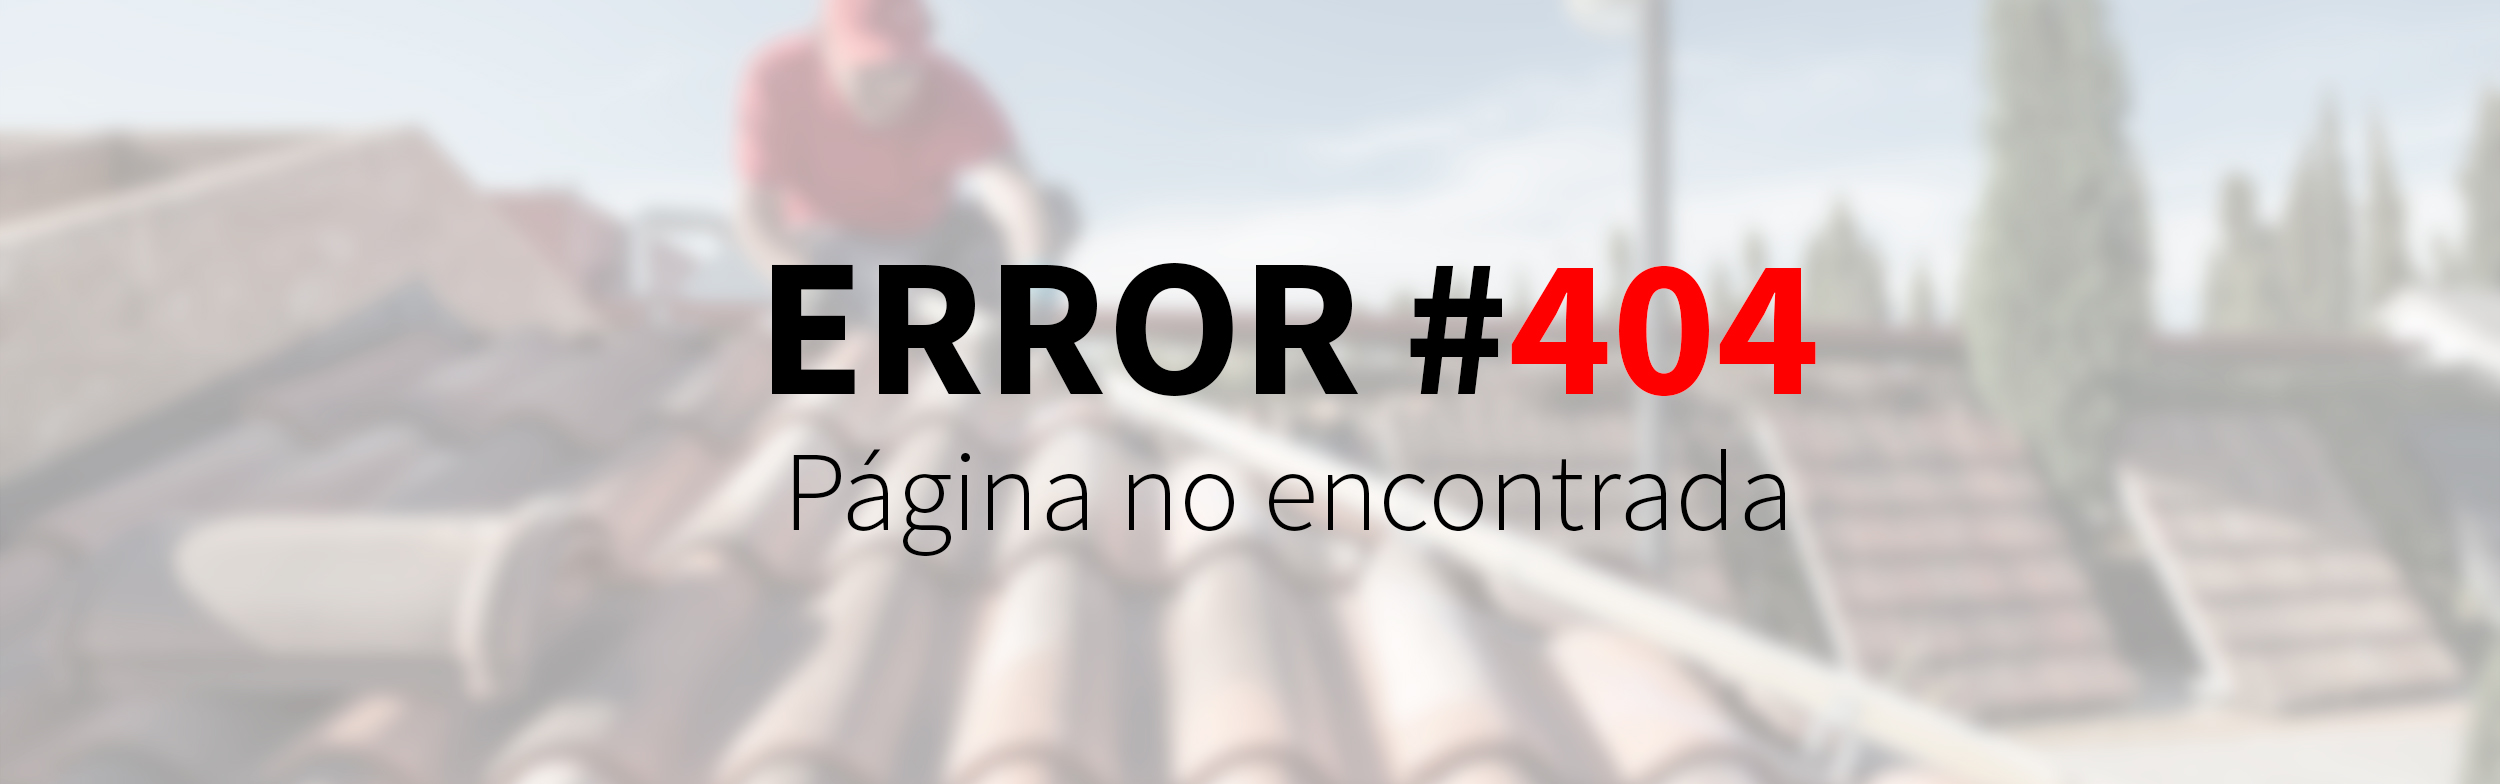 404 esp